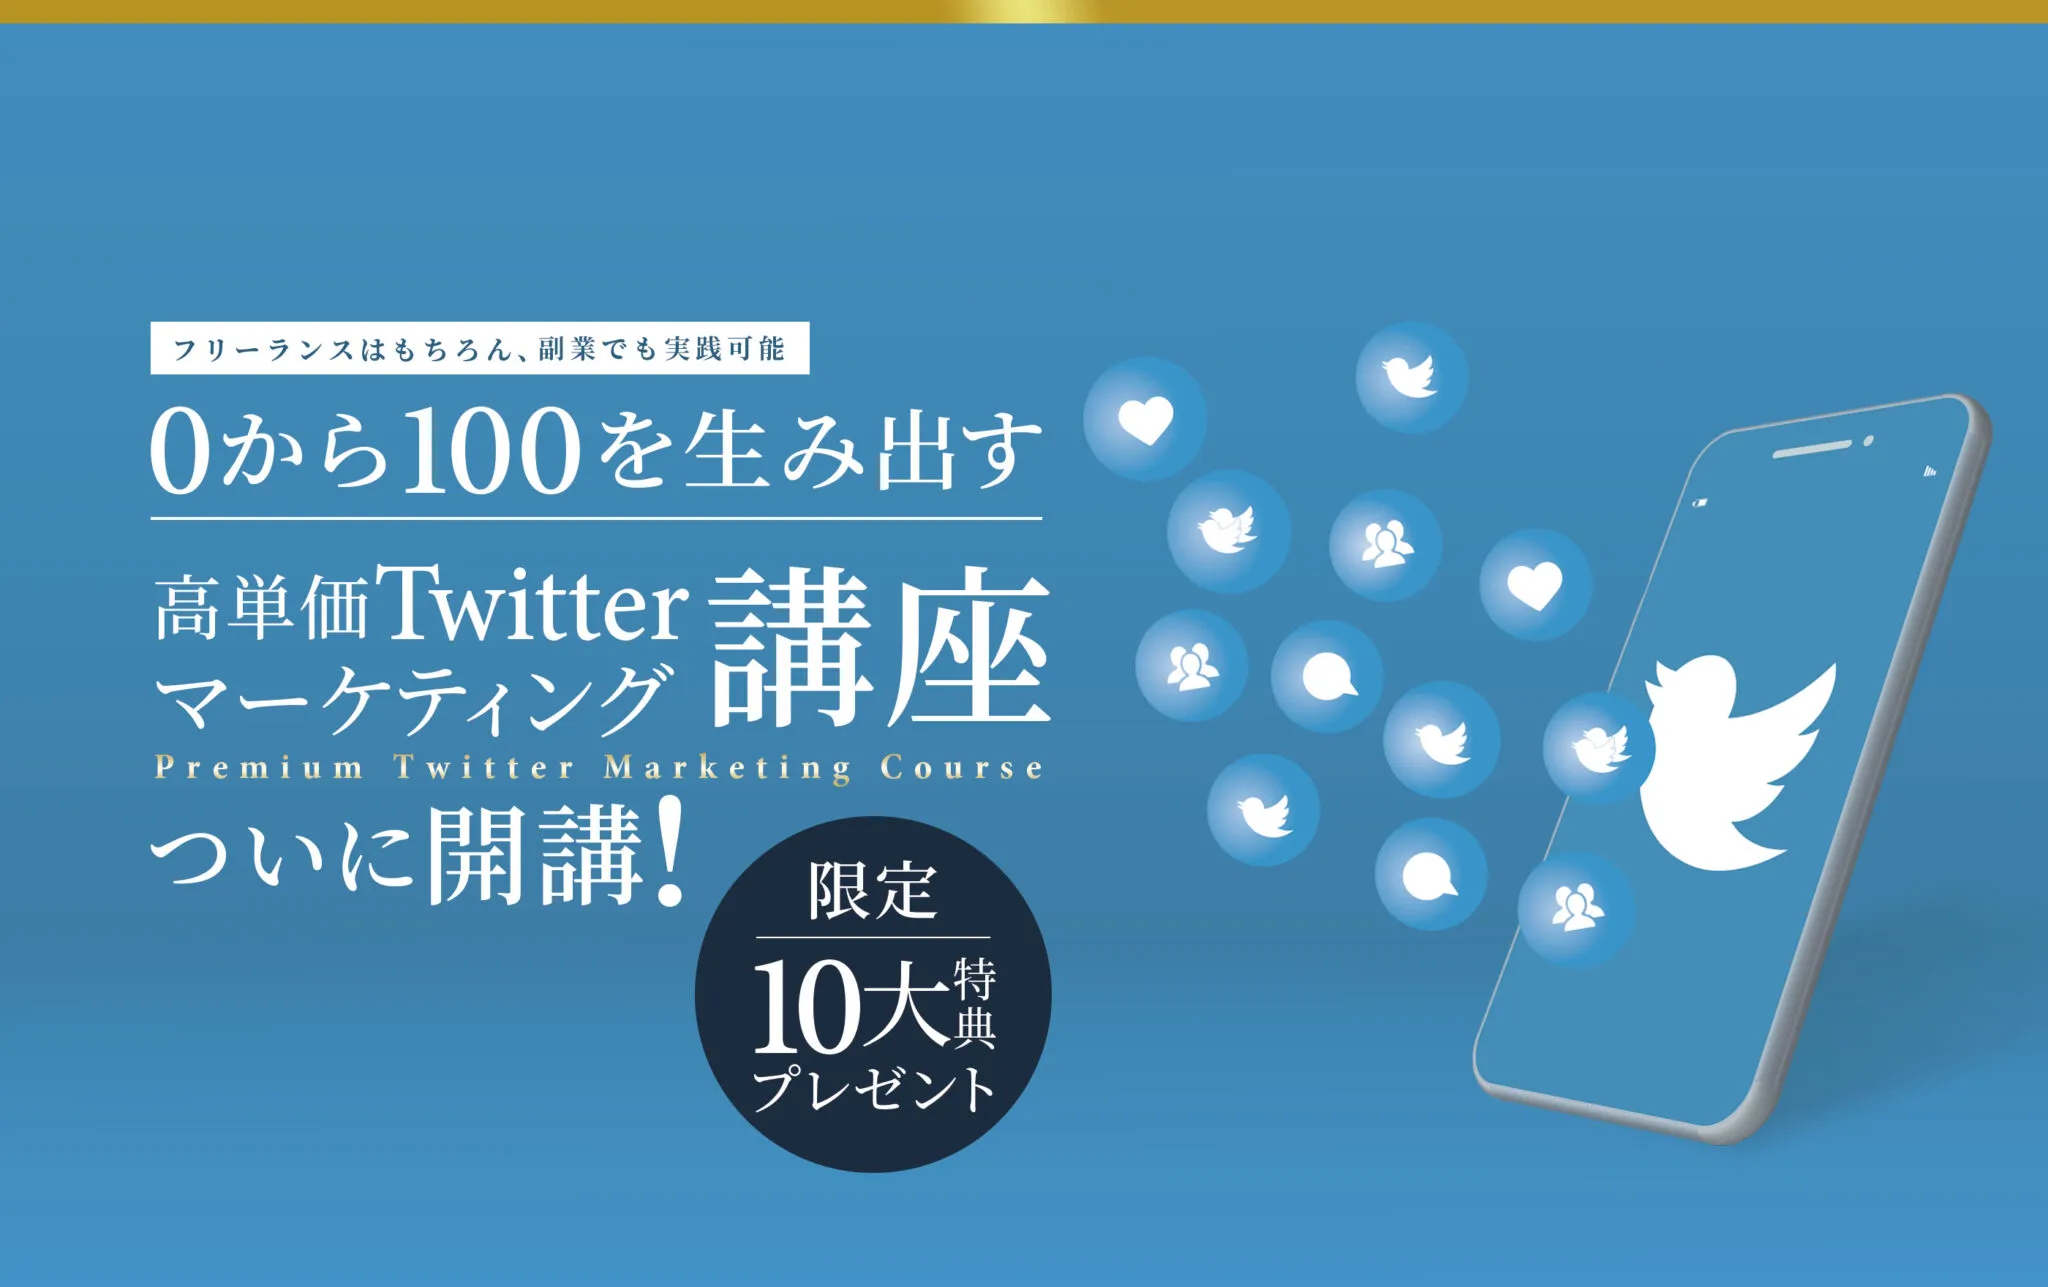 福田直人 0-100高単価Twitterマーケティング講座